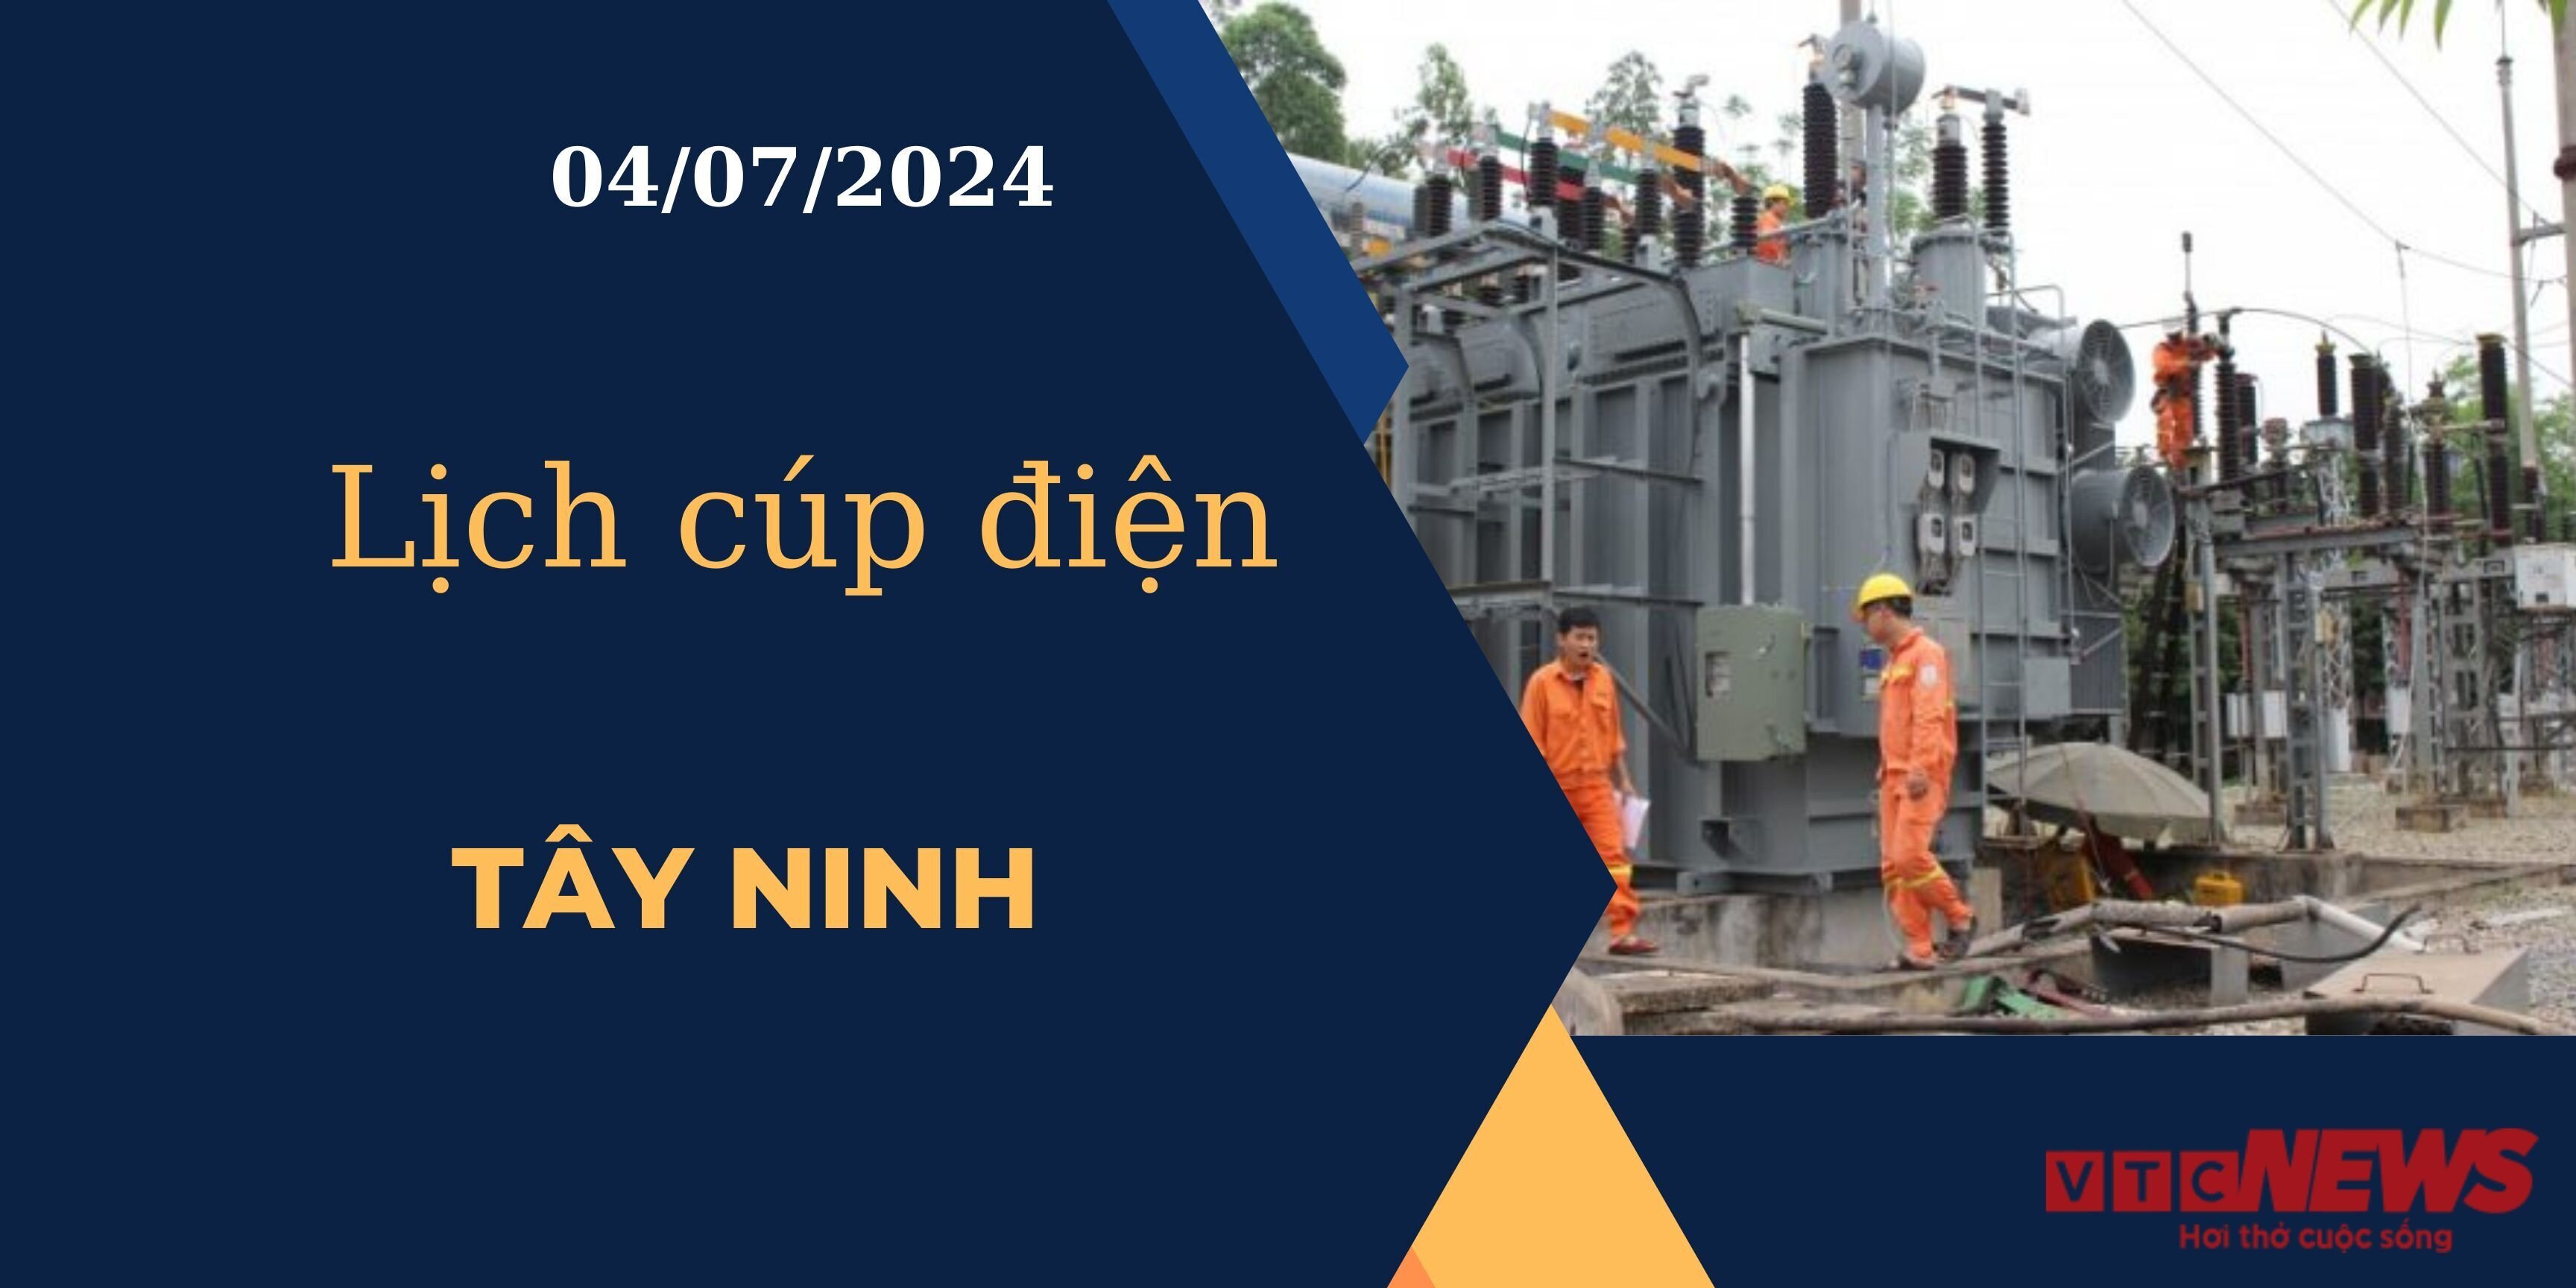 Lịch cúp điện hôm nay ngày 04/07/2024 tại Tây Ninh